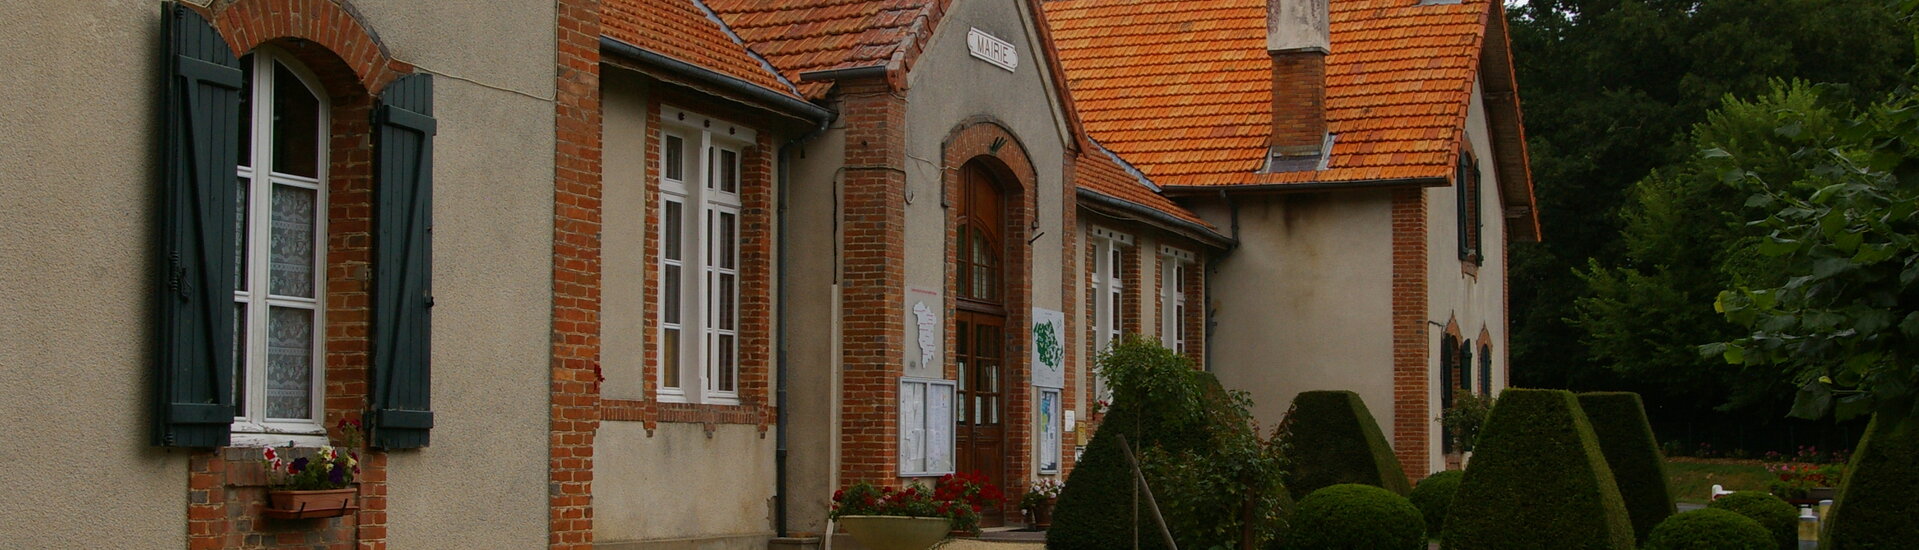 École Enfant Classe Mairie Commune Presly Cher